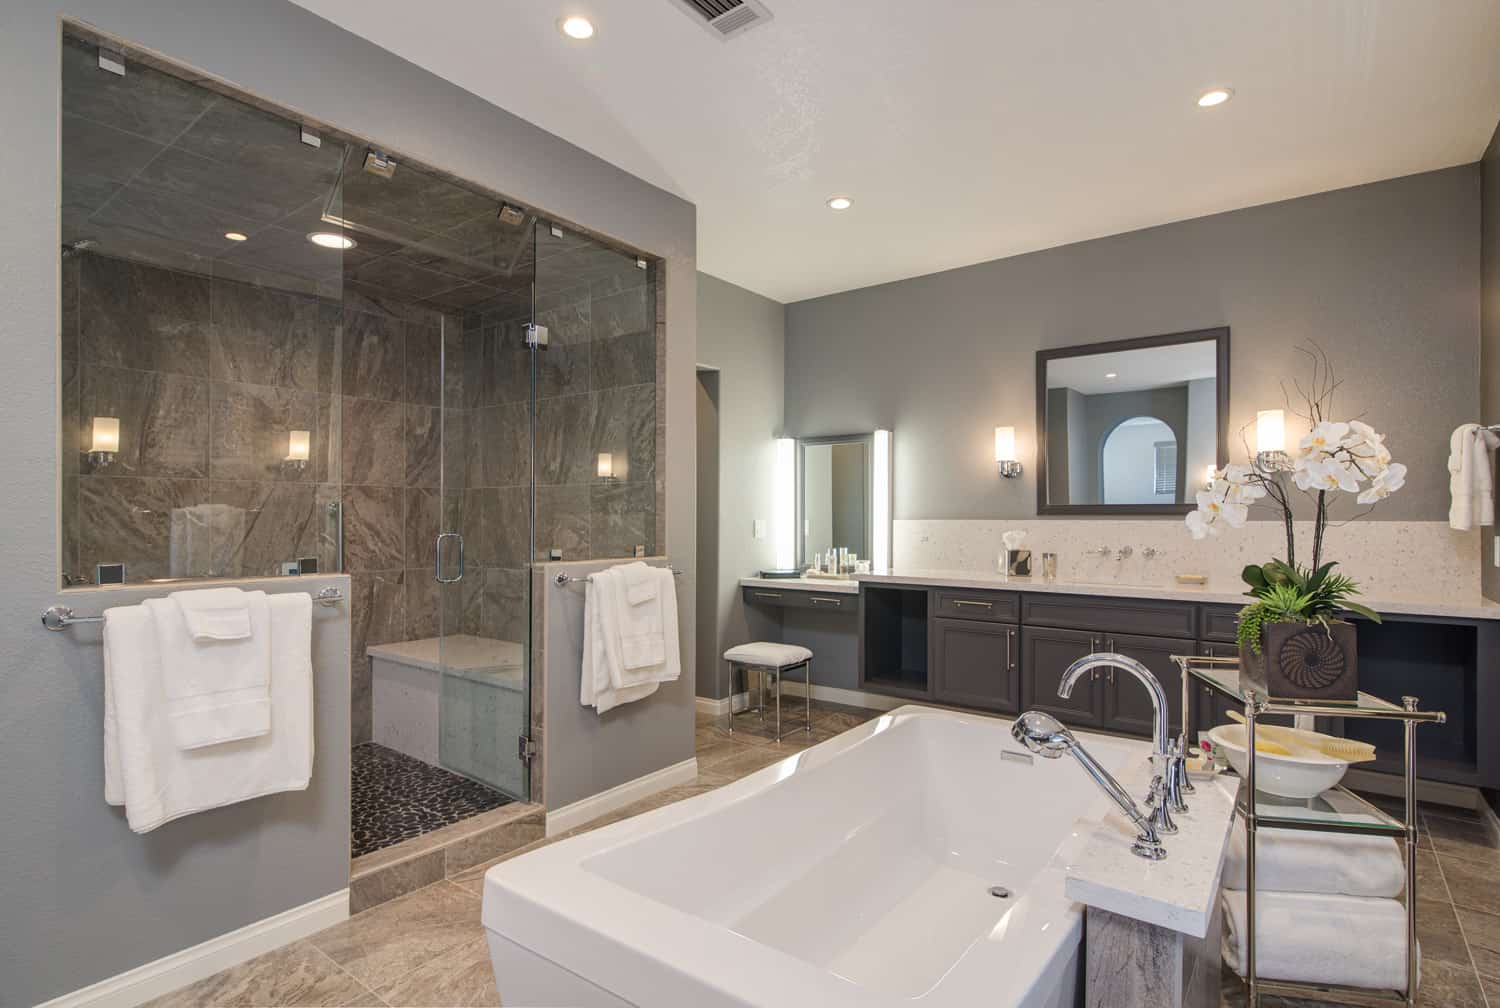 San Diego Bathroom Remodeling Design, Bathroom Remodels Pictures